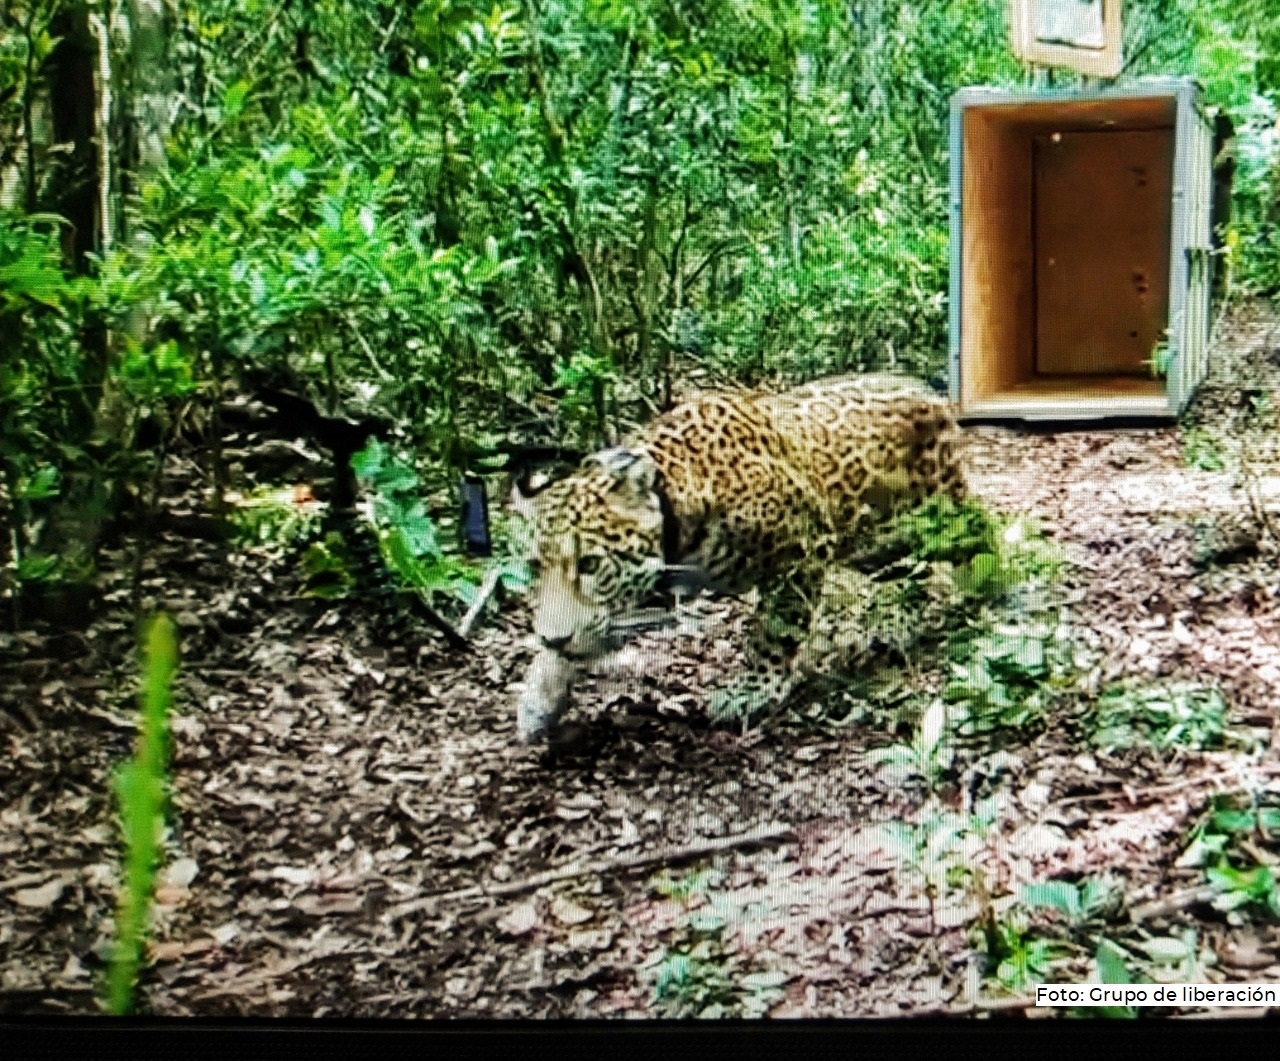 Covi, el Jaguar rescatado, se mantiene protegido en la Reserva de la Biosfera de Sian Ka'an